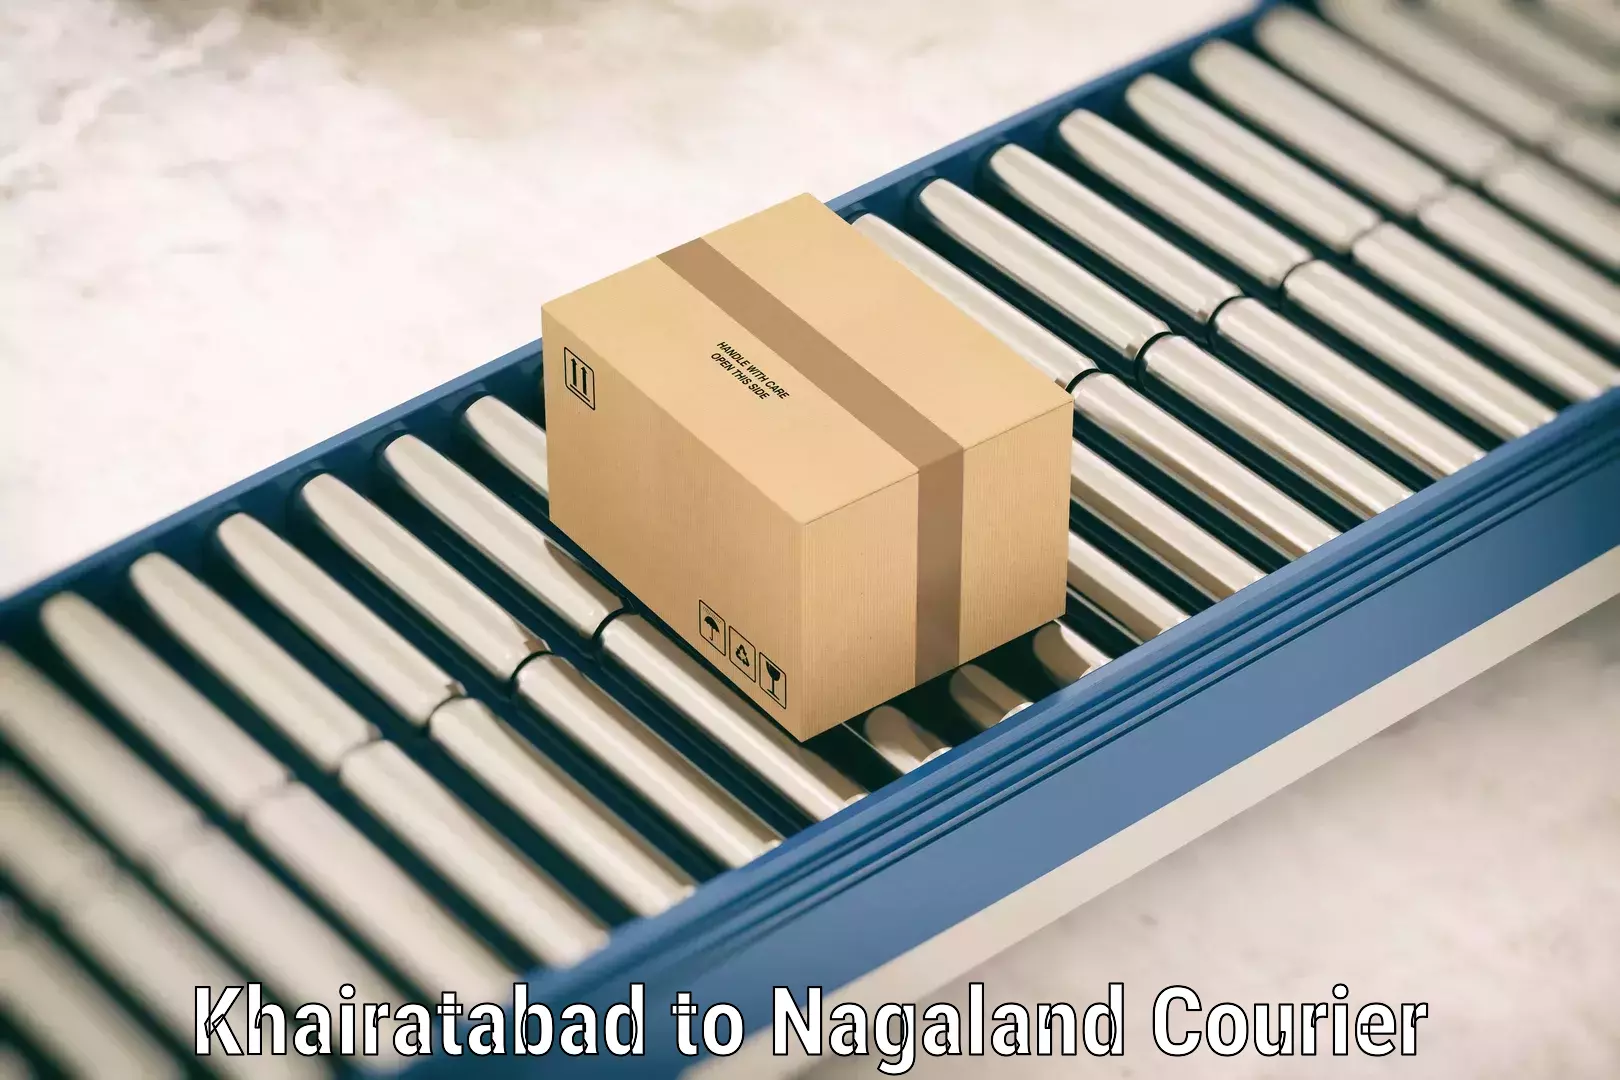 Urgent luggage shipment Khairatabad to Nagaland